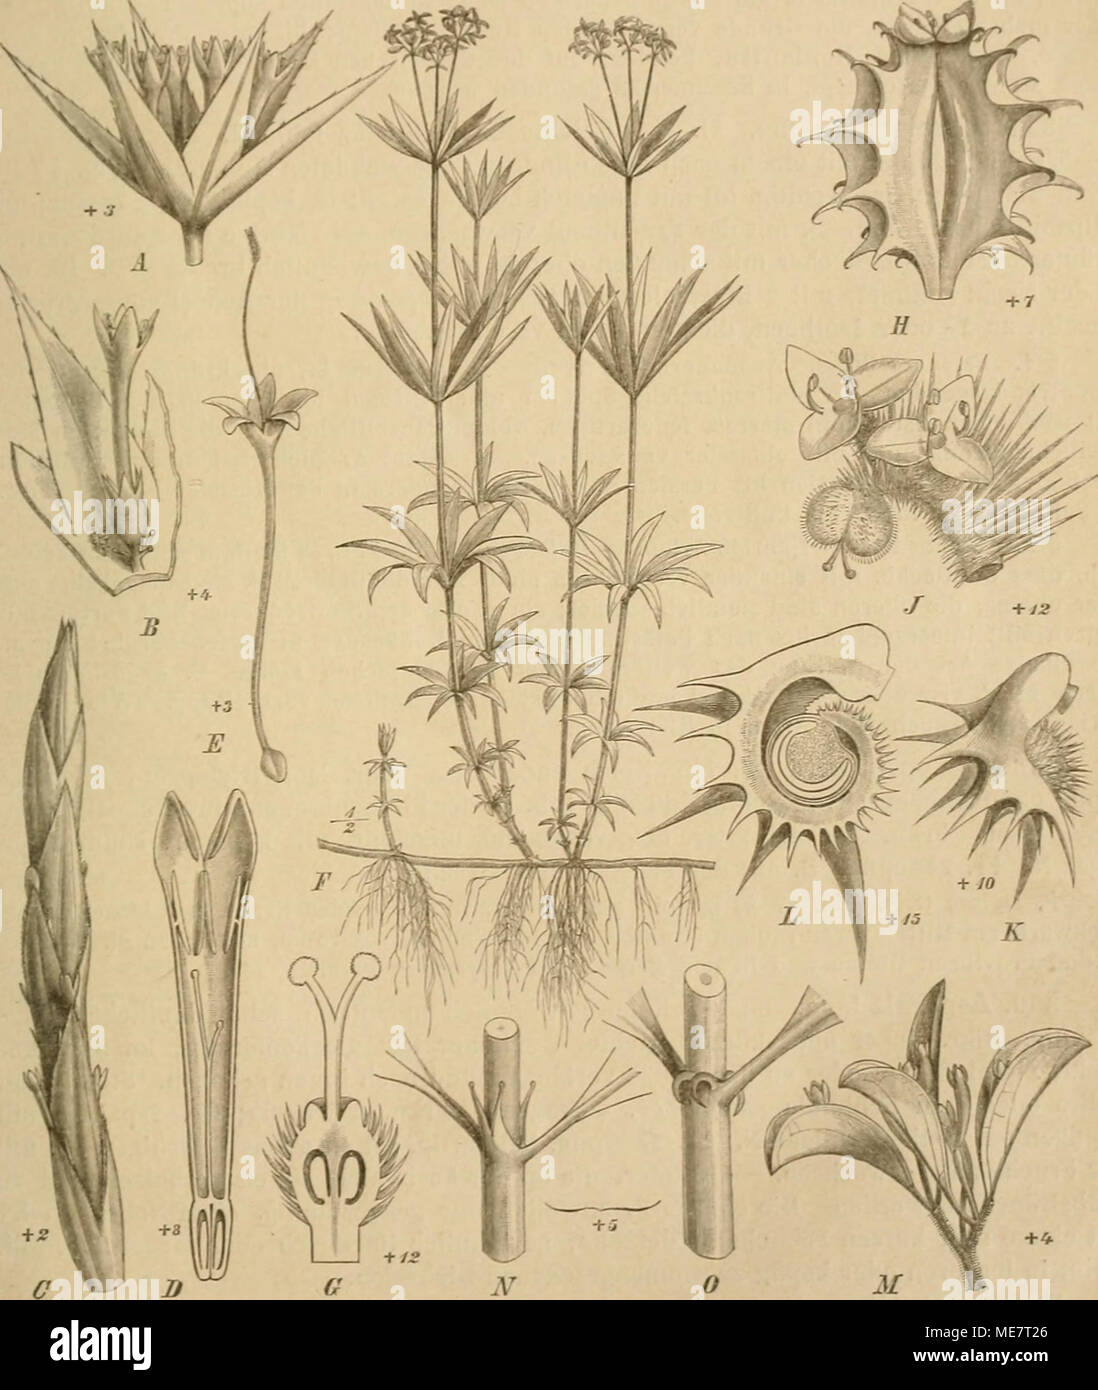 . Die Natürlichen Pflanzenfamilien : nebst ihren Gattungen und wichtigeren Arten, insbesondere den Nutzpflanzen . Fig. 47. Ä, B Sherardia artensis L. A Blütenstand; B Bl. — C, D Crucianella latifoUa L. C Blutenstand: D Bl. im Längsschnitt. — F. Phuopsis stylosa (Trin.) Gris., Bl. — /', 0 Asperula odorata L. F Habitus ; 0 Frkn. im Längsschnitt. — E Mericarpaea taillanlioides Boiss., Fr. — J—L YaiUantia hispida L. J Blütenstand; K Fr.; L Fr. im Längsschnitt. — M Callipellis CncuUaria (L.) Stev., Blütenstand. (Original.) 10* Stock Photo